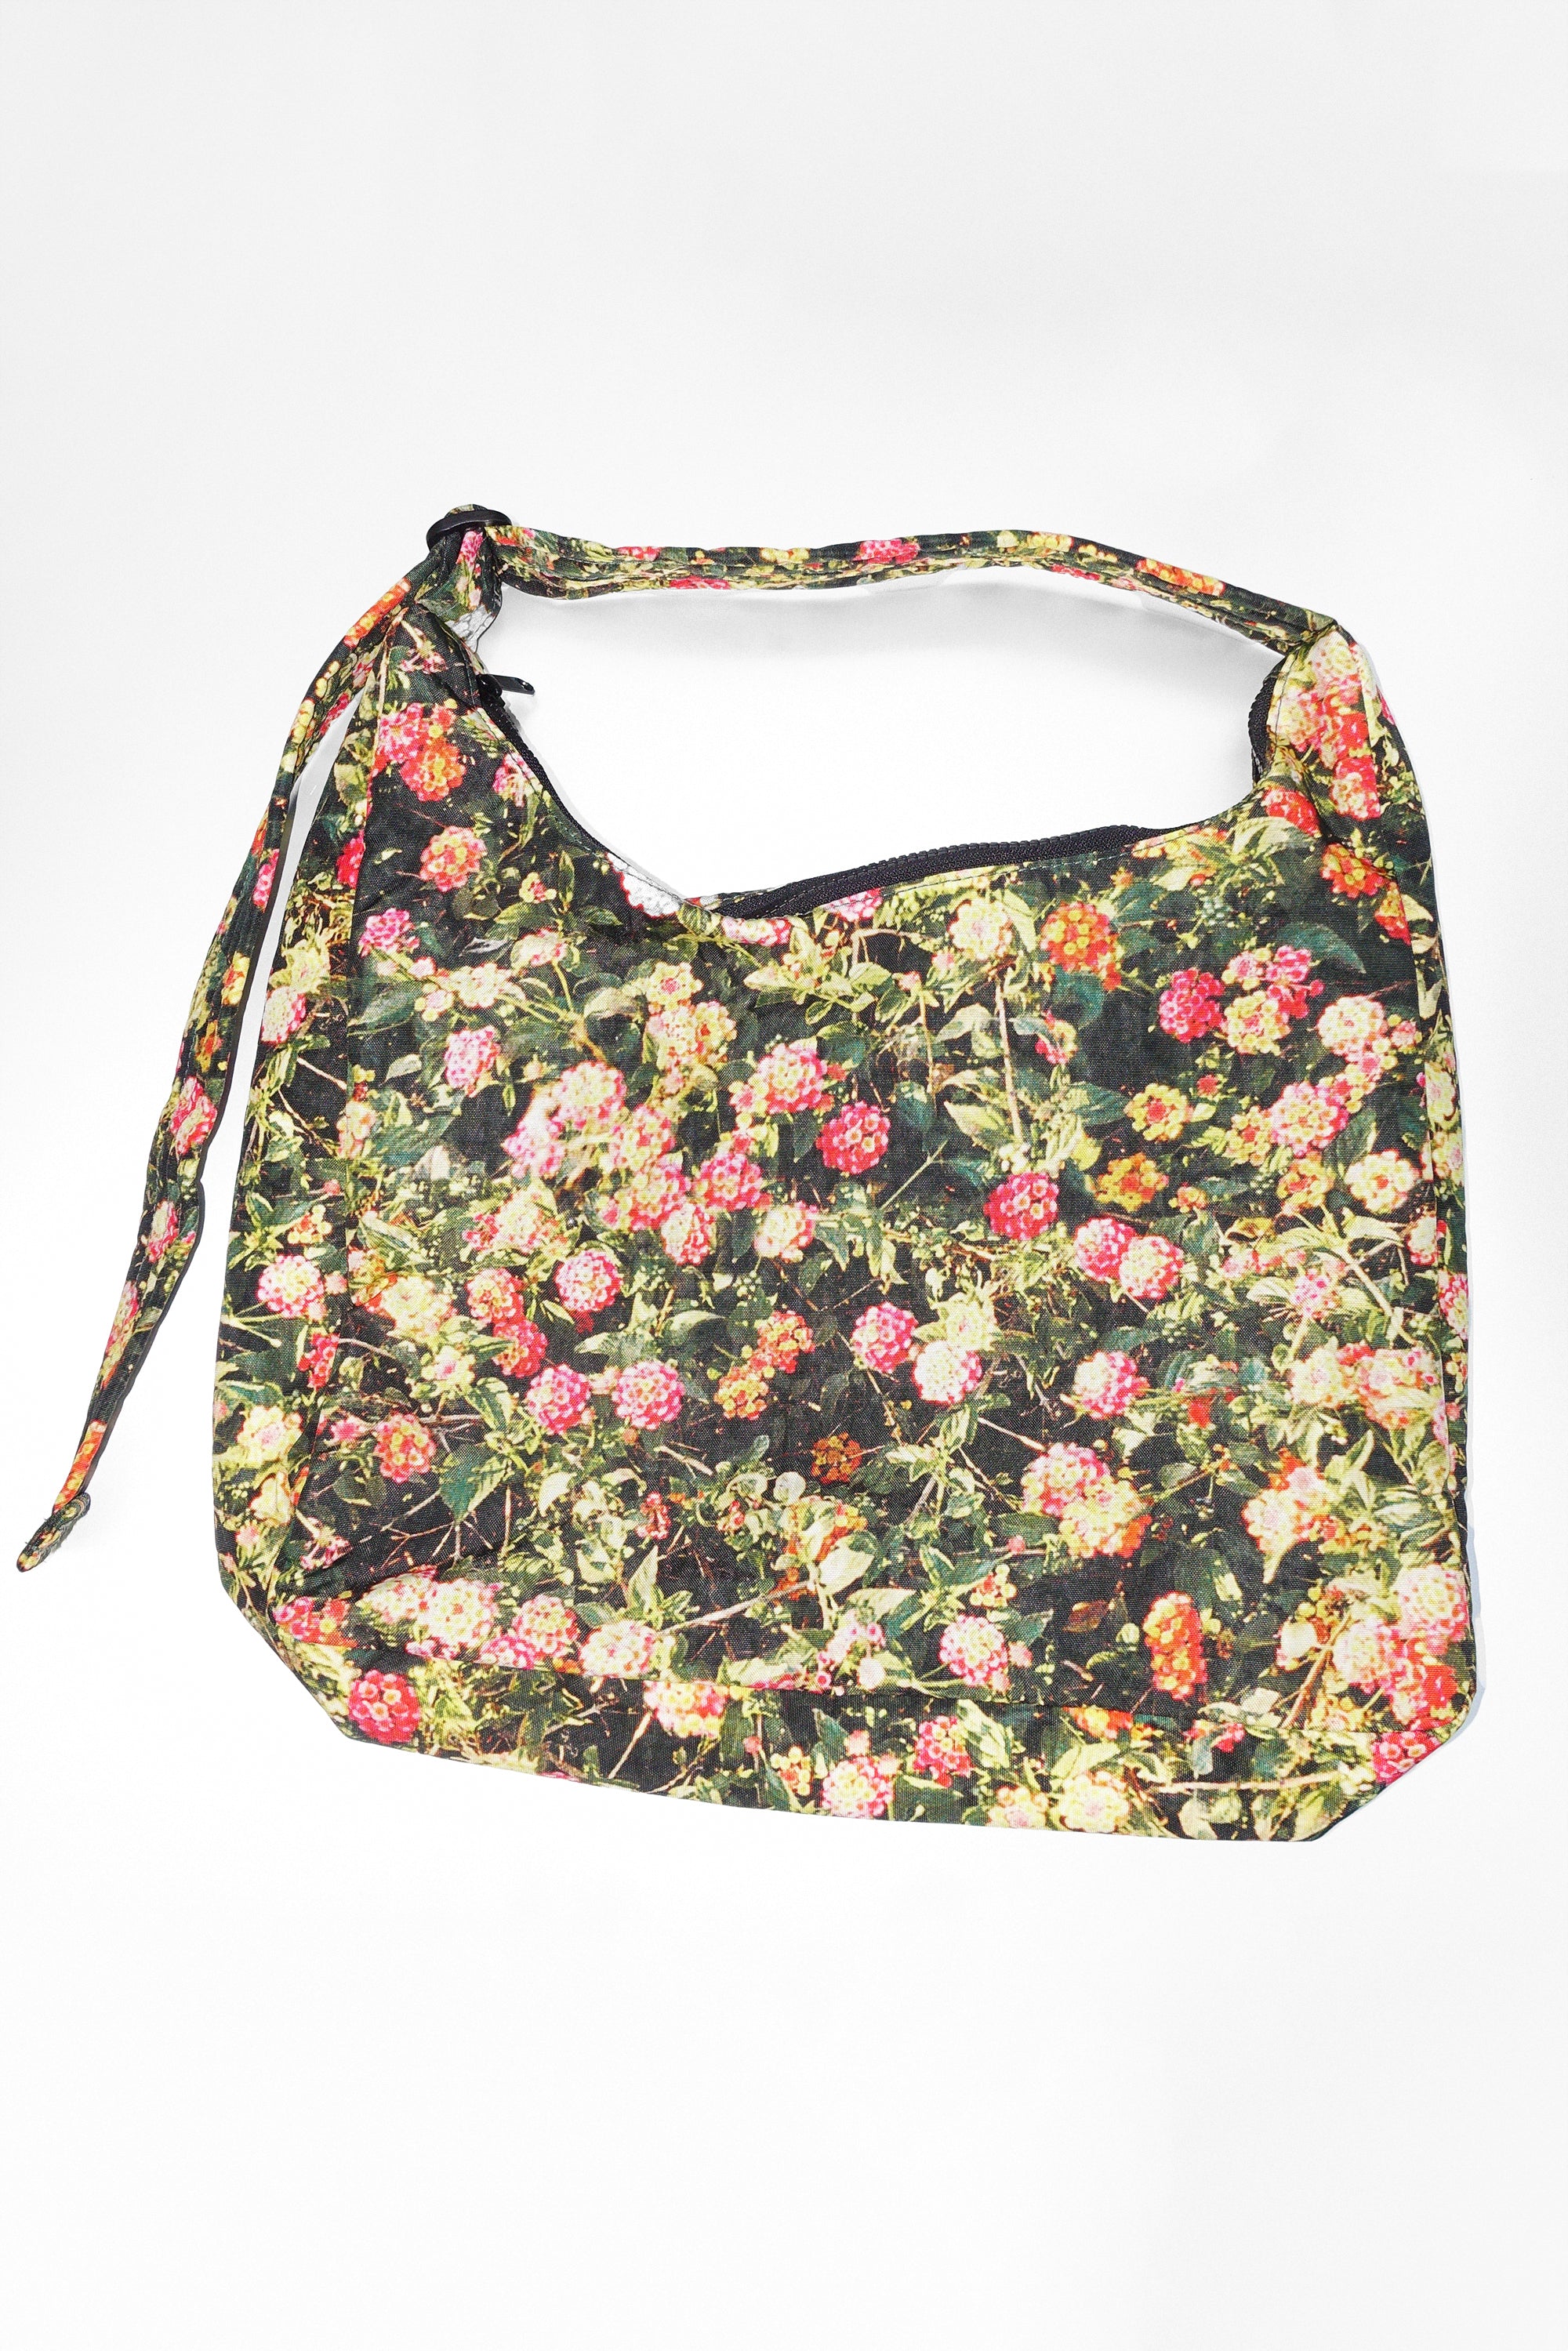 Jessie Women's Structured Shoulder Handbag